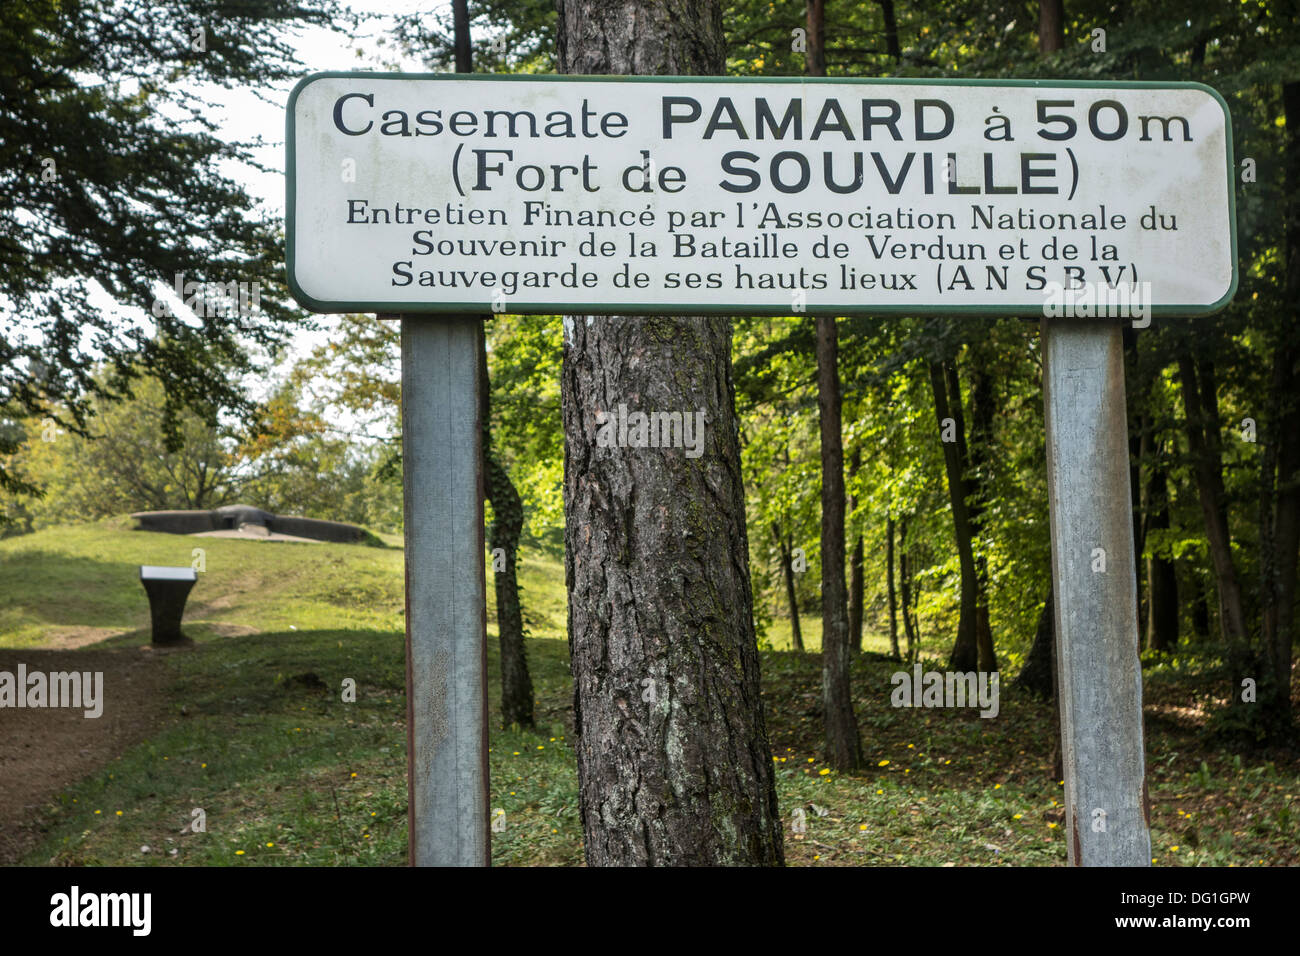 Signe pour Première Guerre mondiale une mitrailleuse type bunker Casemate Pamard de WW1 Fort de Souville, Lorraine, bataille de Verdun, France Banque D'Images